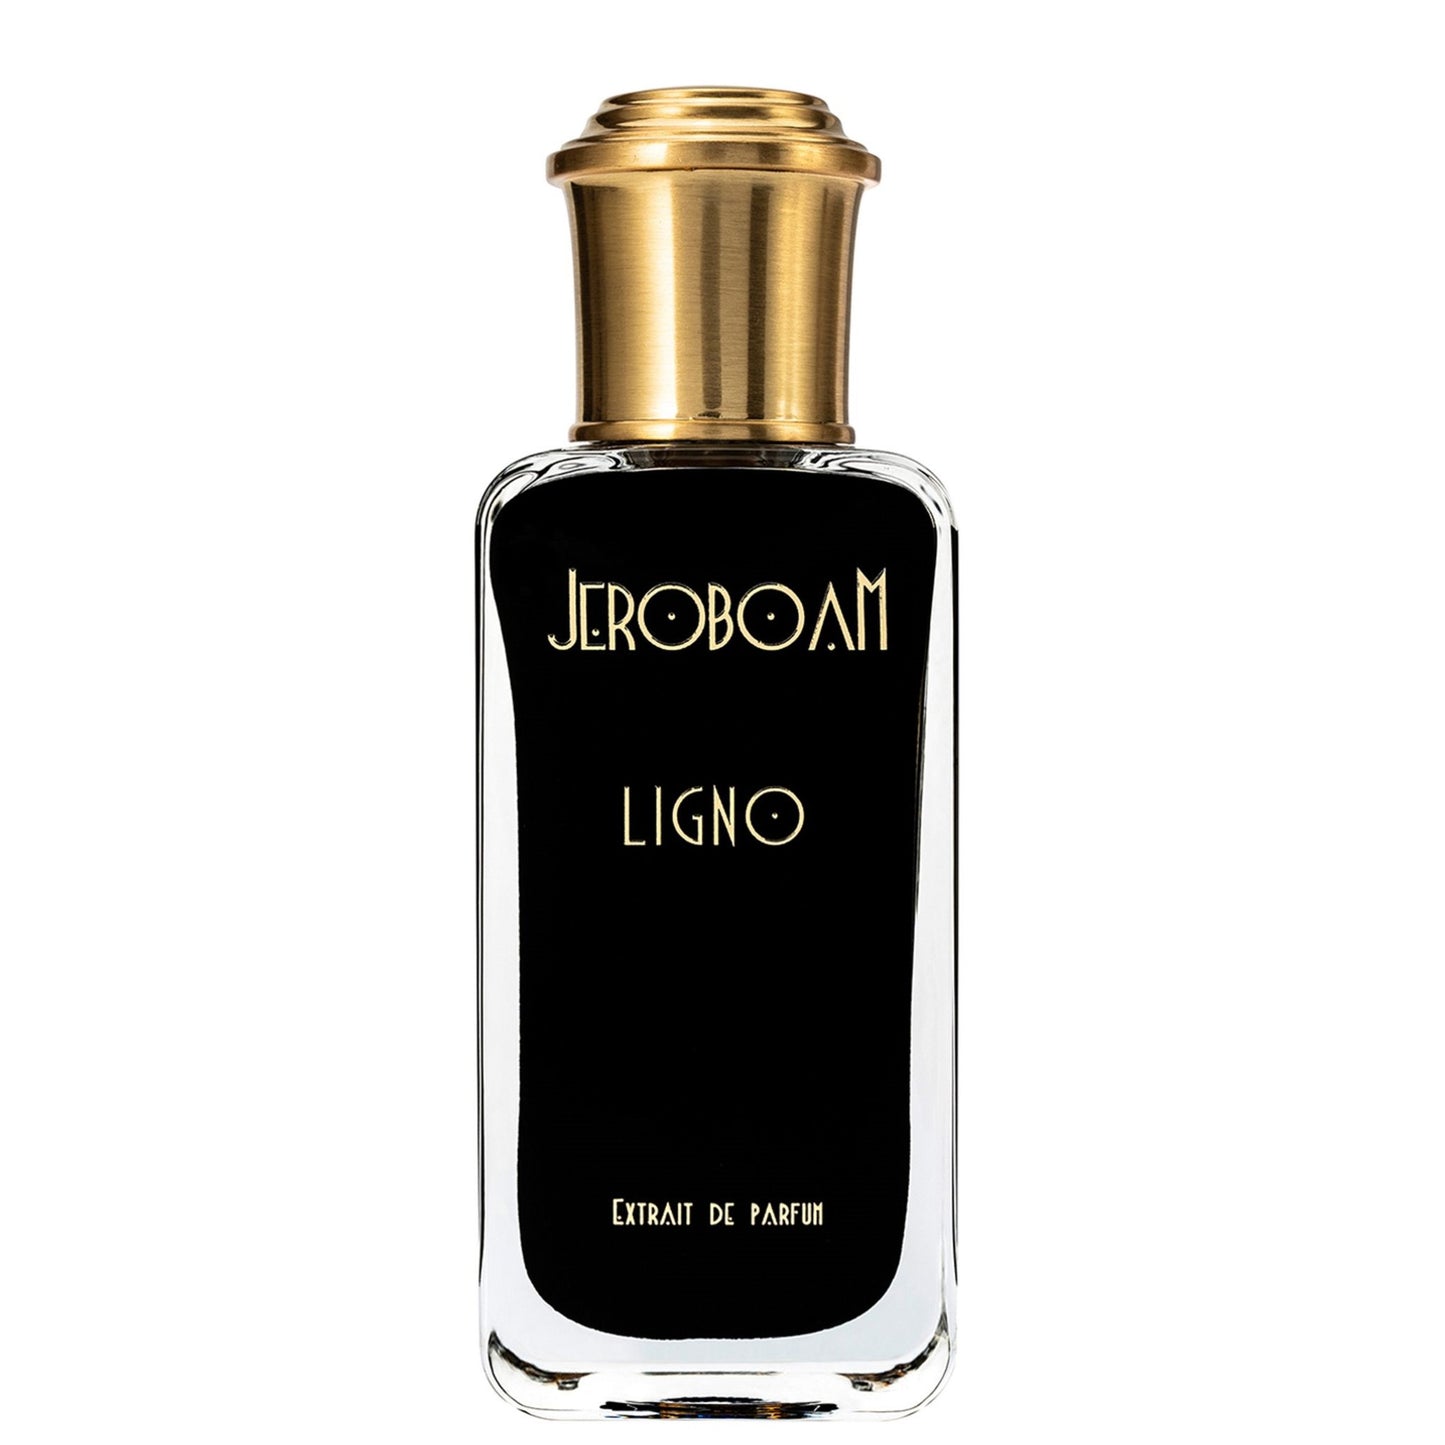 Jeroboam - Ligno - Extrait de Parfum